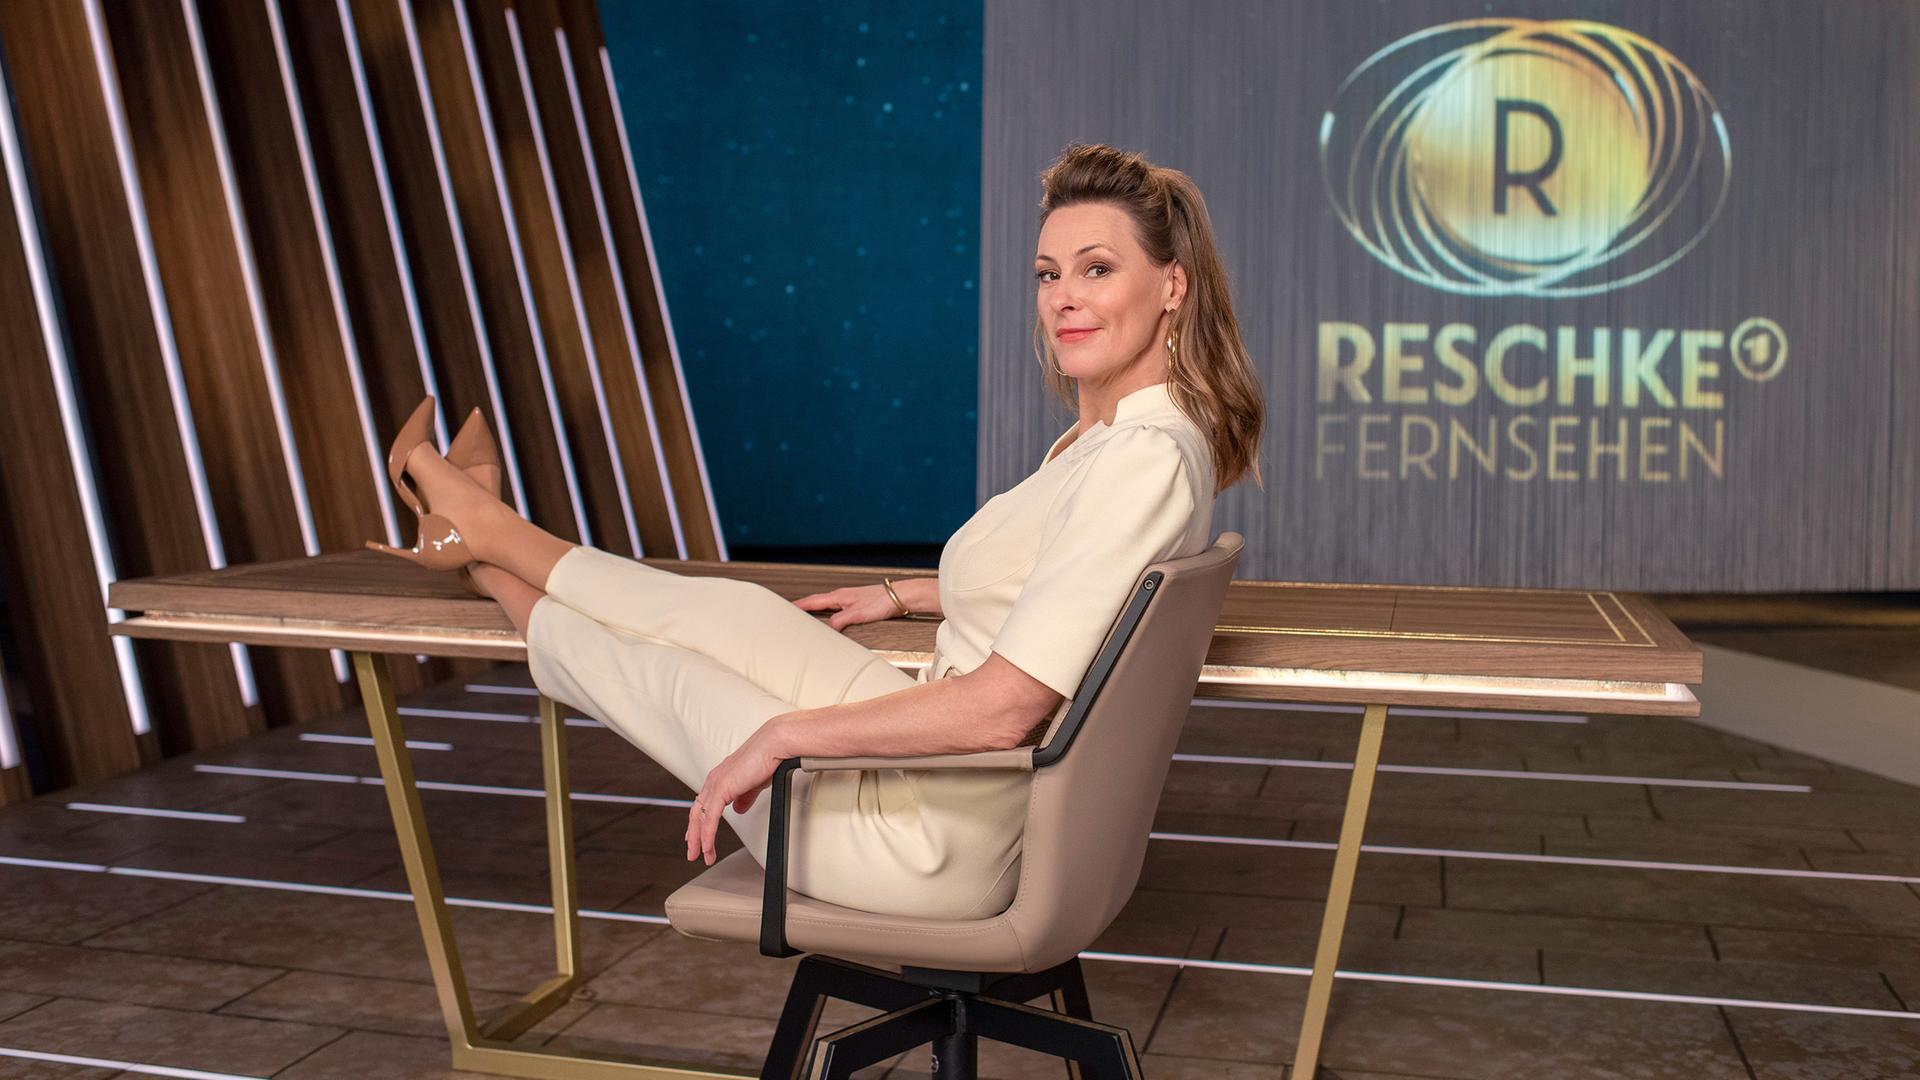 Anja Reschke sitzt in einem Bürostuhl mit den Füßen auf dem Tisch. Im Hintergrund zeigt ein Screen das Sendelogo für "Reschke Fernsehen".